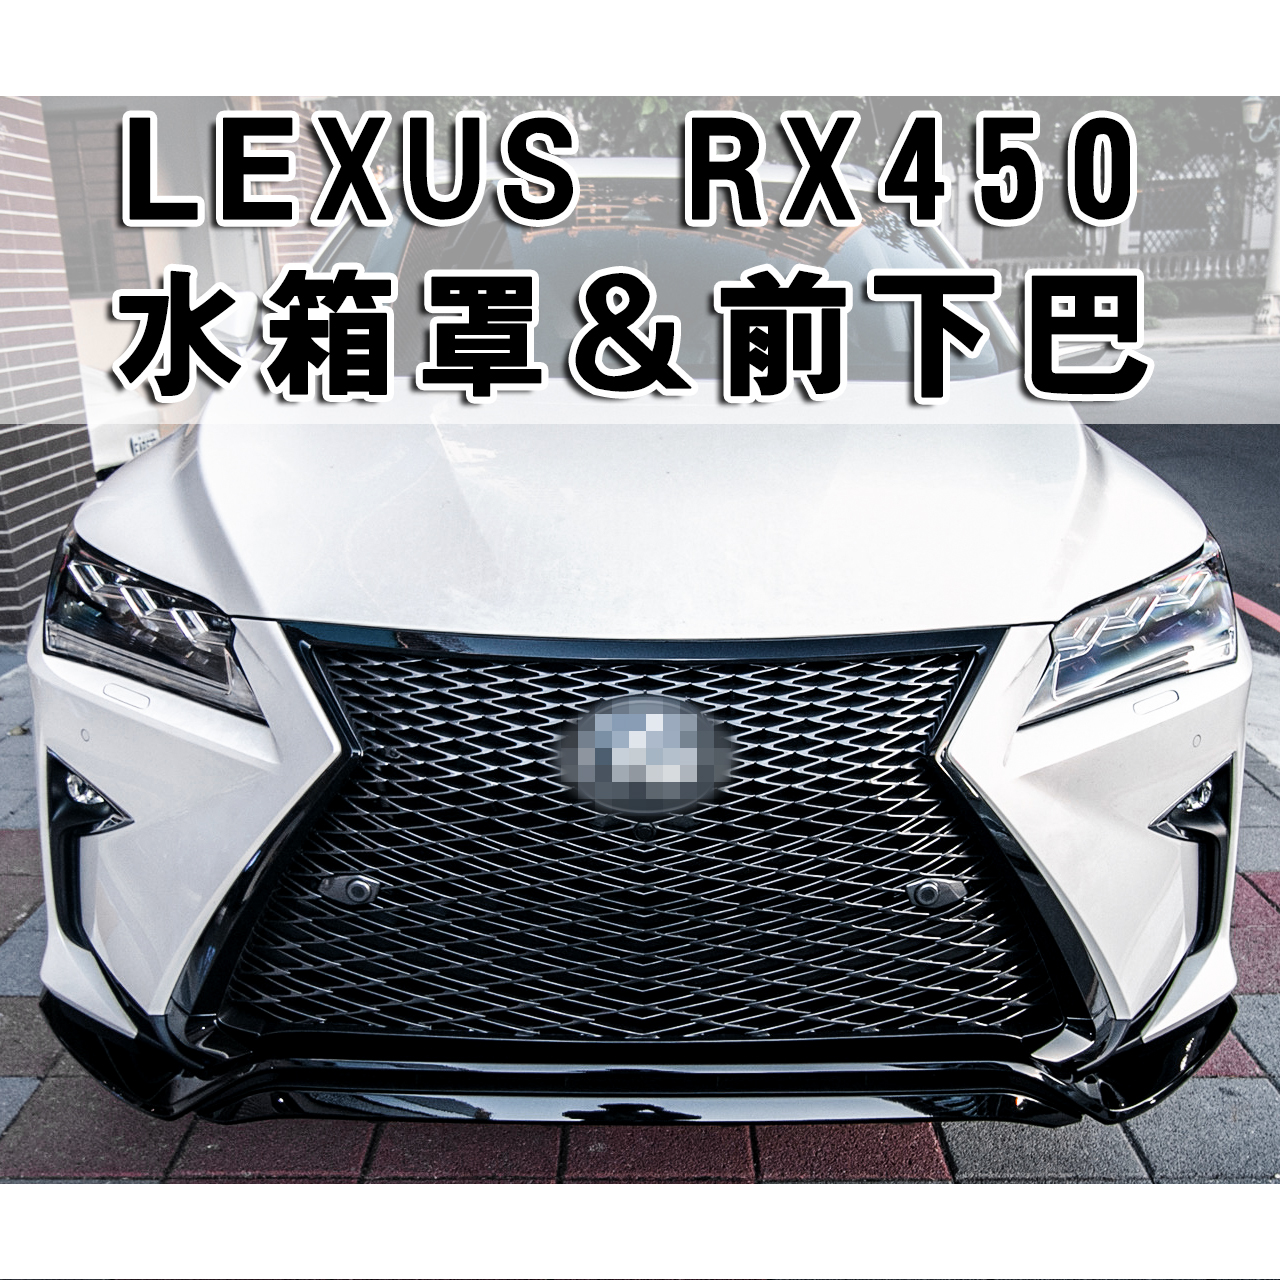 LEXUS RX300水箱罩, LEXUS RX350水箱罩, LEXUS RX450水箱罩